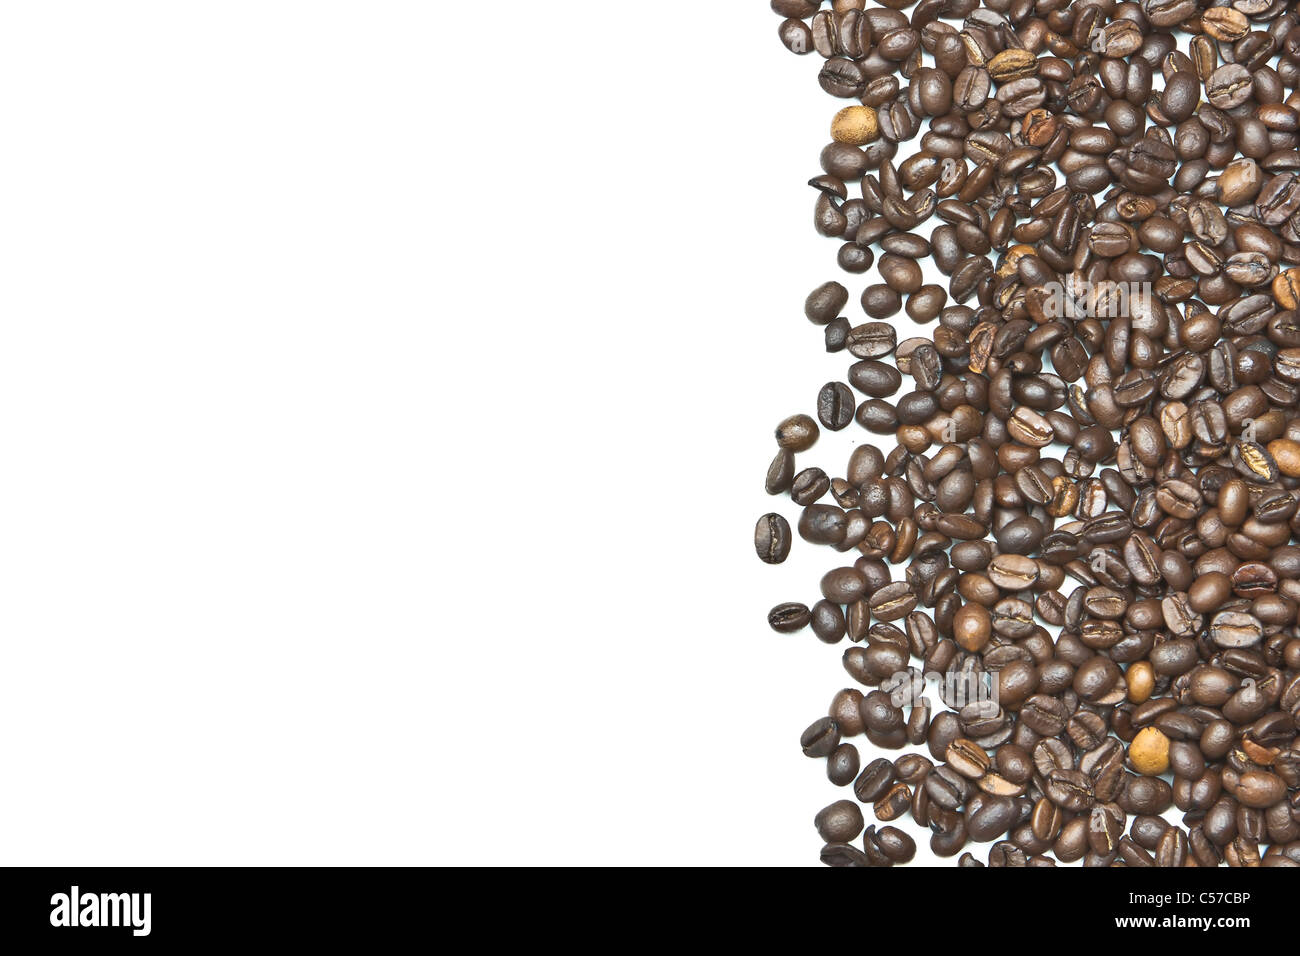 Kaffeebohnen als Rahmen für Ihren eigenen text Stockfoto